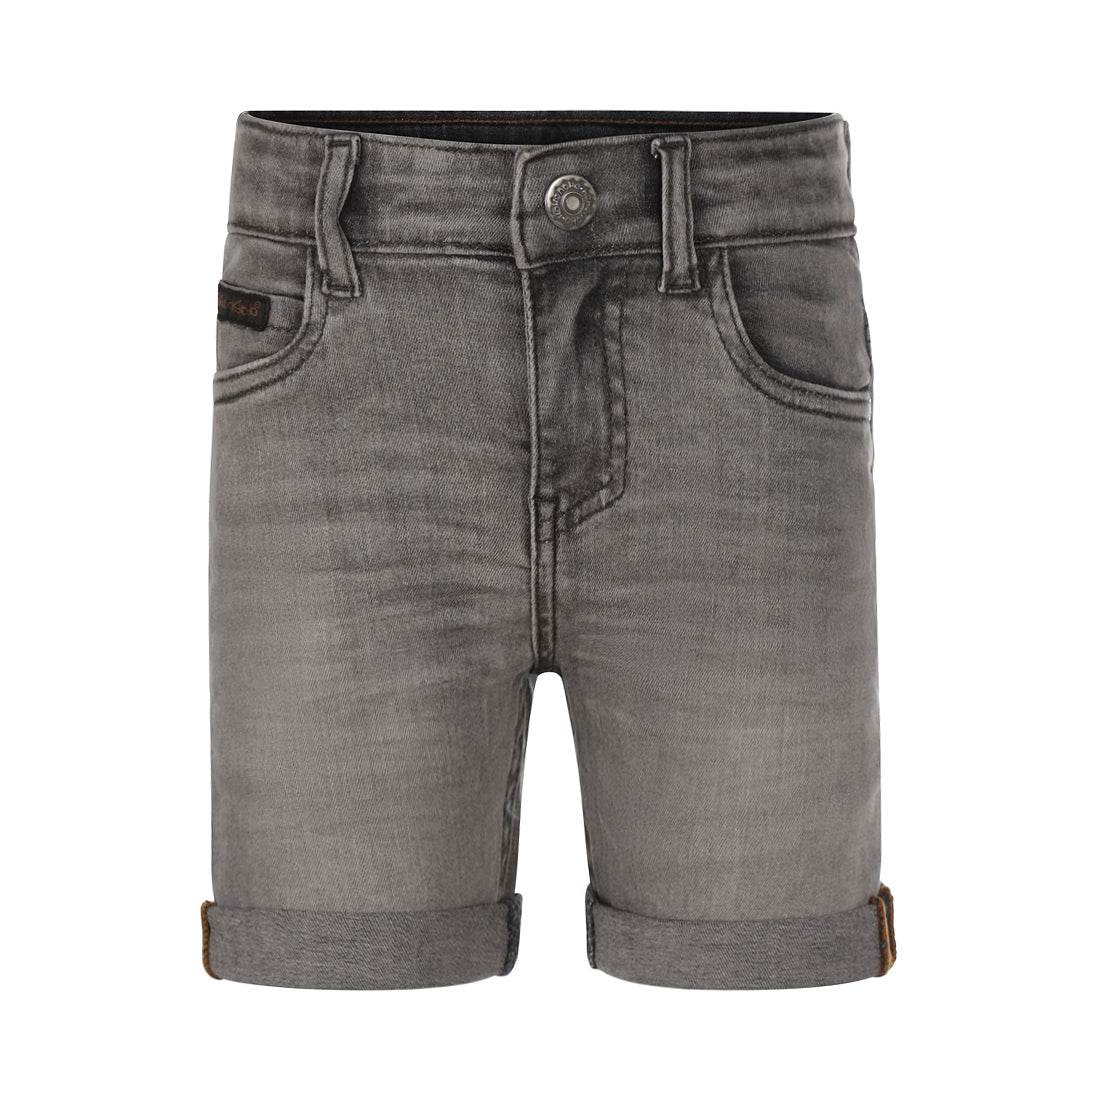 Jongens Jeans shorts turn-up loose fit van Koko Noko in de kleur Grey jeans in maat 128.